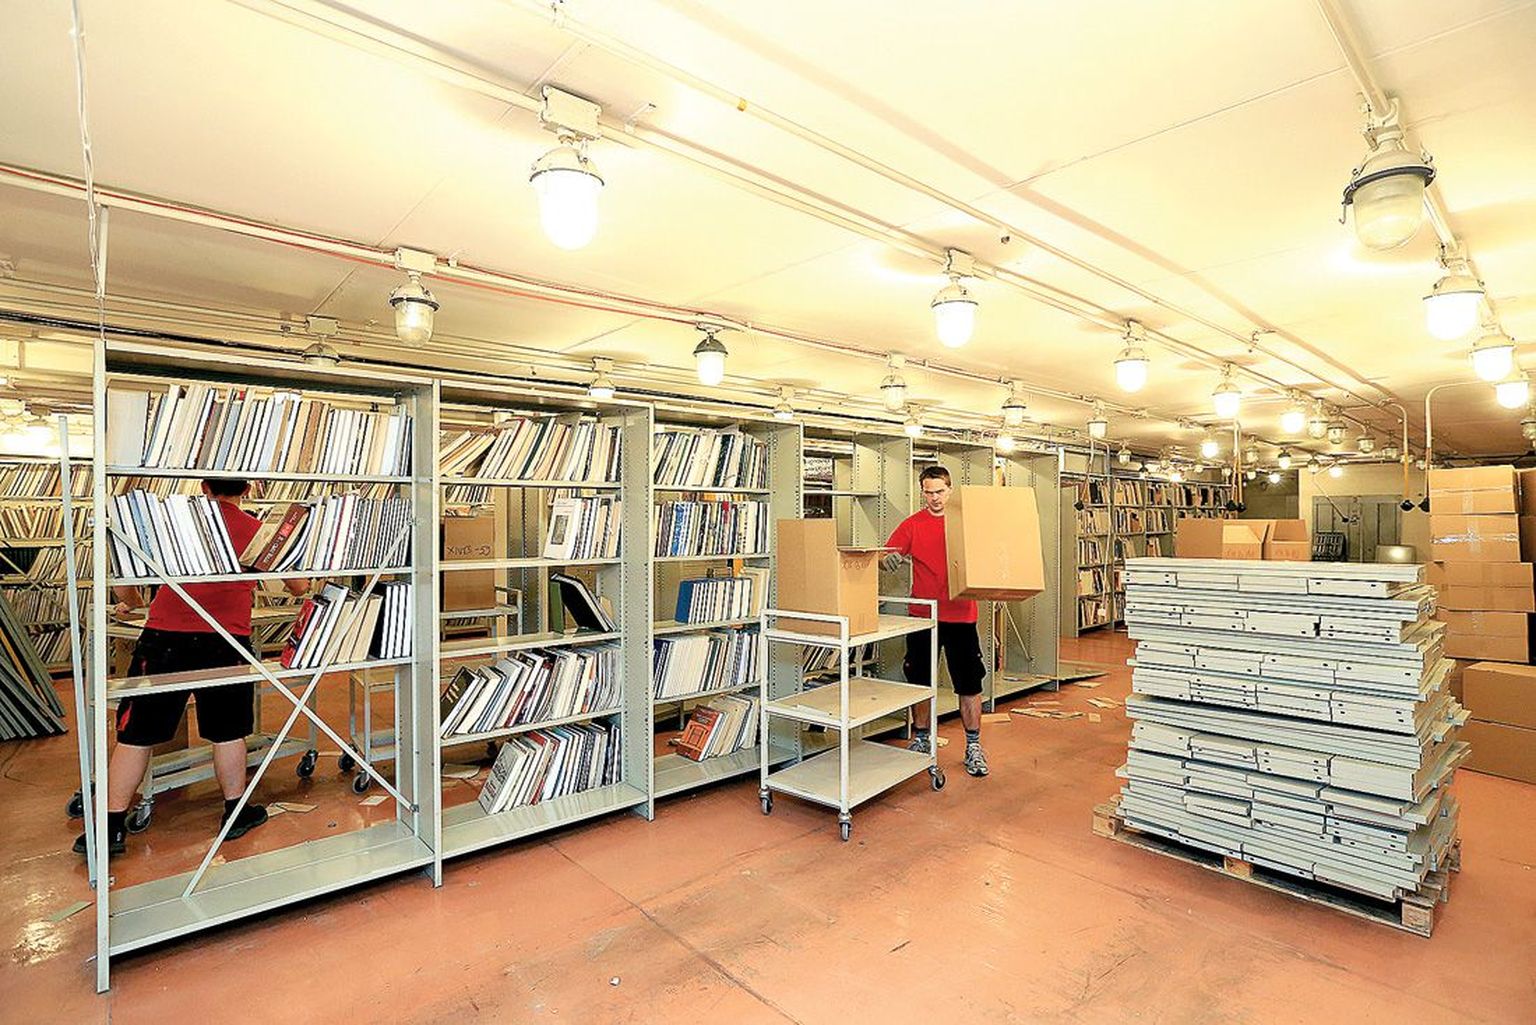 Praegu käib raamatukogu A-hoidlas vilgas kolimine. Paljud teosed on kastidesse pakitud ja suurem osa viiakse majast välja laopinnale.